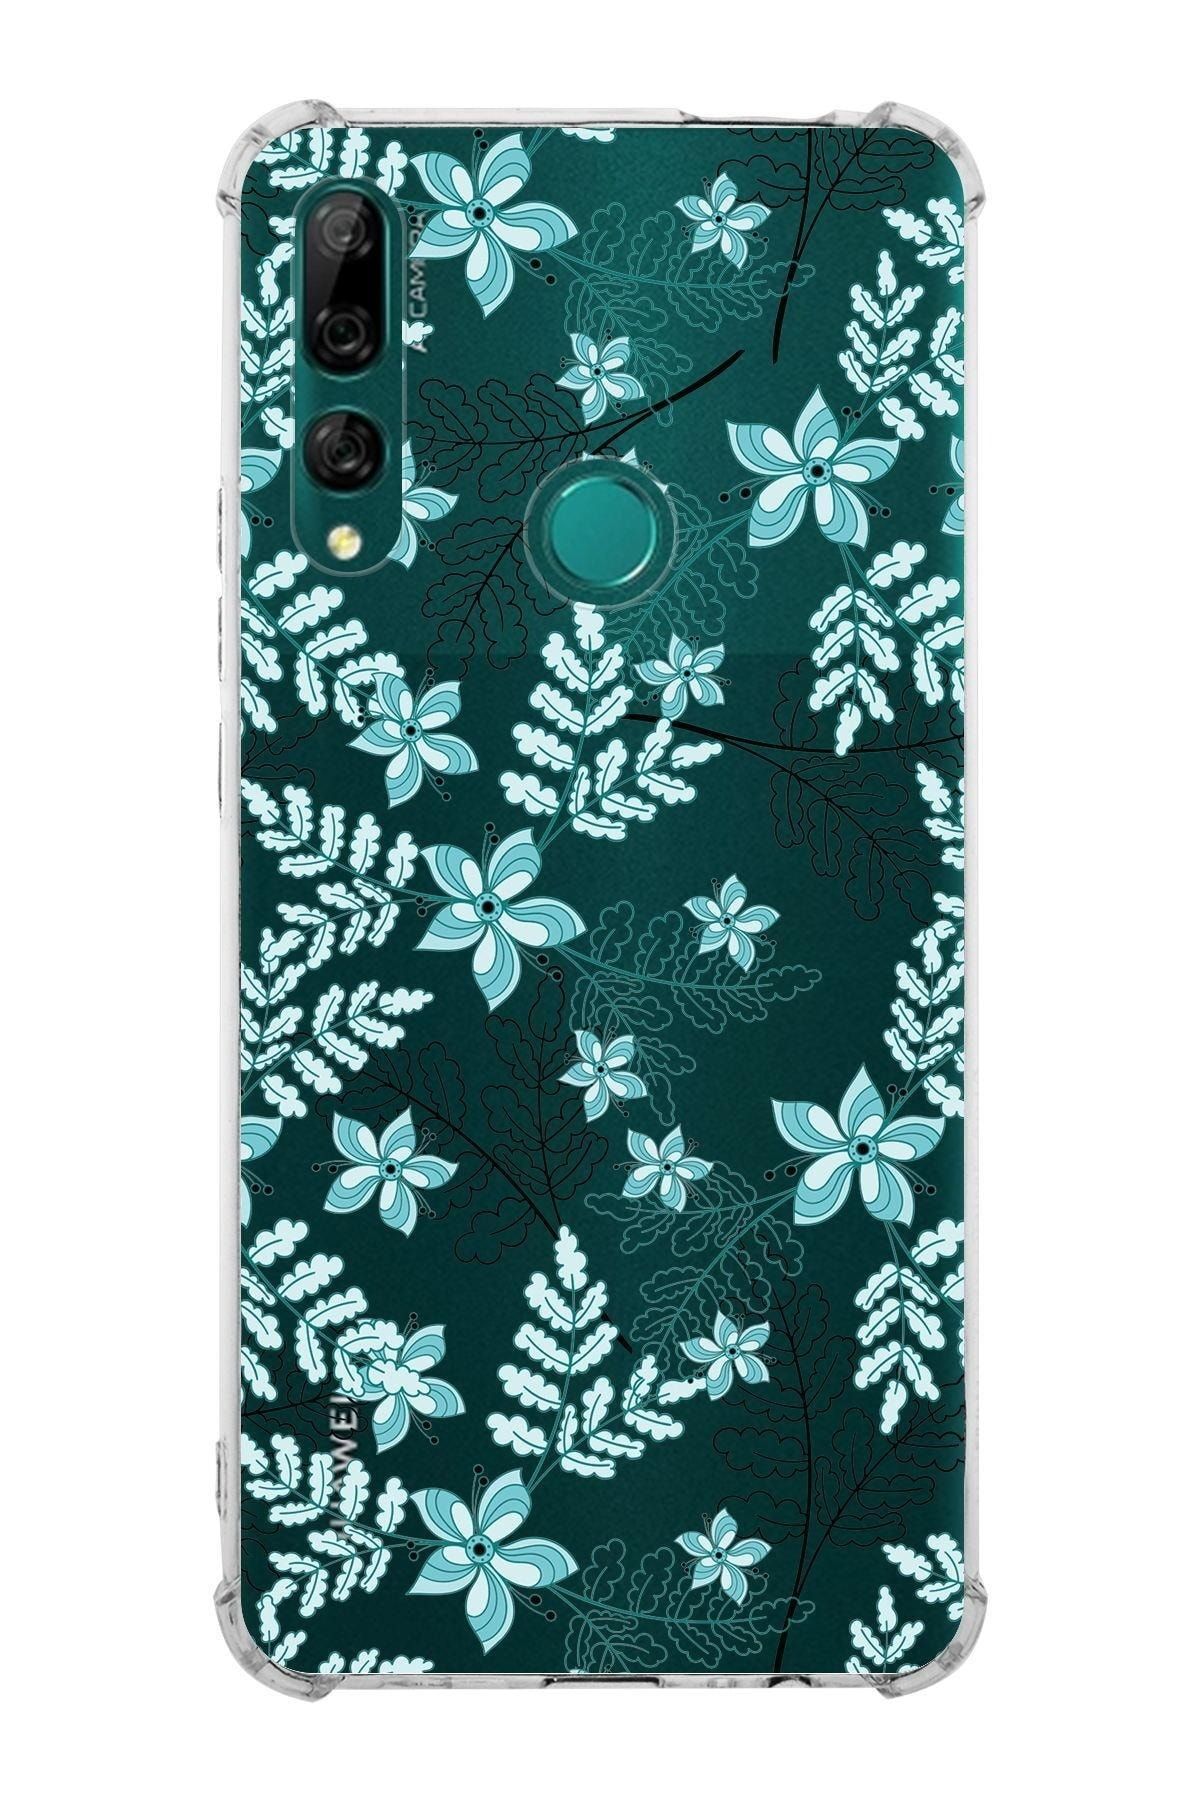 PrintiFy Huawei Y9 Prime 2019 Köşe Korumalı Antişok Kapak Floral Su Yeşili Tasarımlı Şeffaf Kılıf